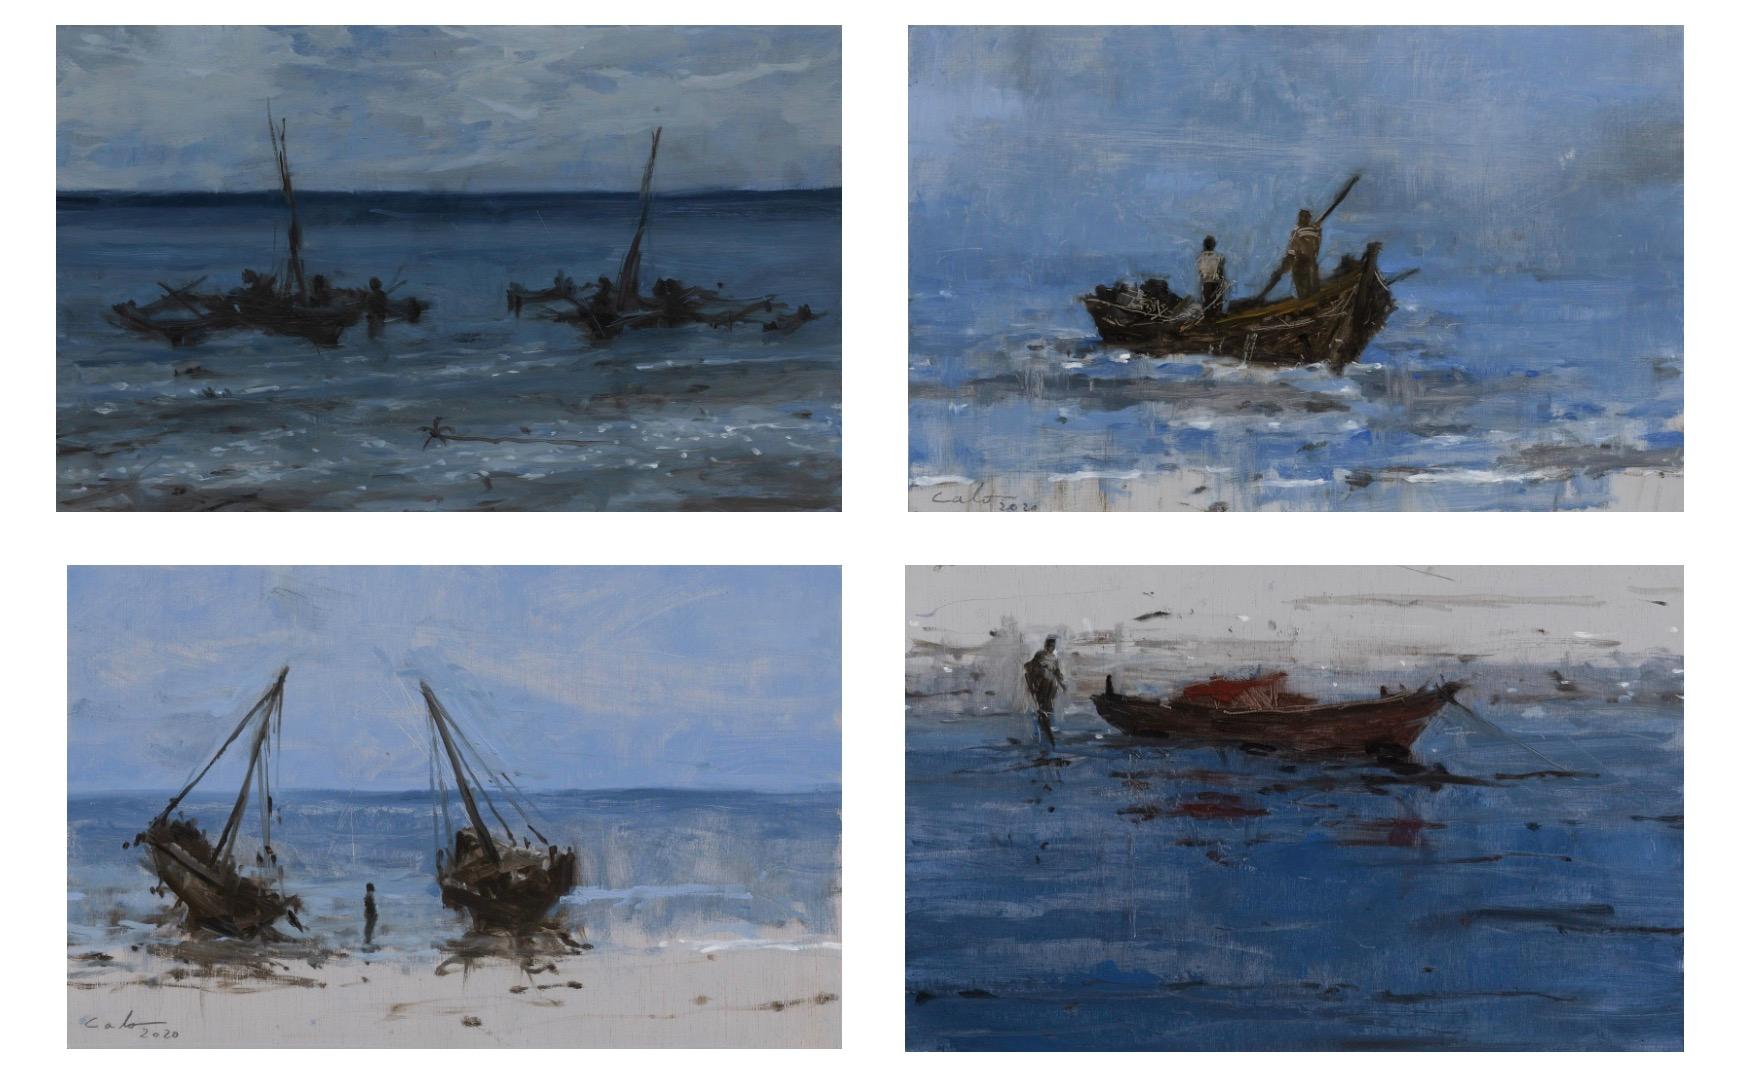 Satz von 4 Gemälden aus der Serie "Marinas" des spanischen zeitgenössischen Künstlers Calo Carratalá.
Ölgemälde auf Holzplatte, je 22 cm × 35 cm. Abmessungen der Installation wie abgebildet (einschließlich 5 cm Abstand zwischen den einzelnen